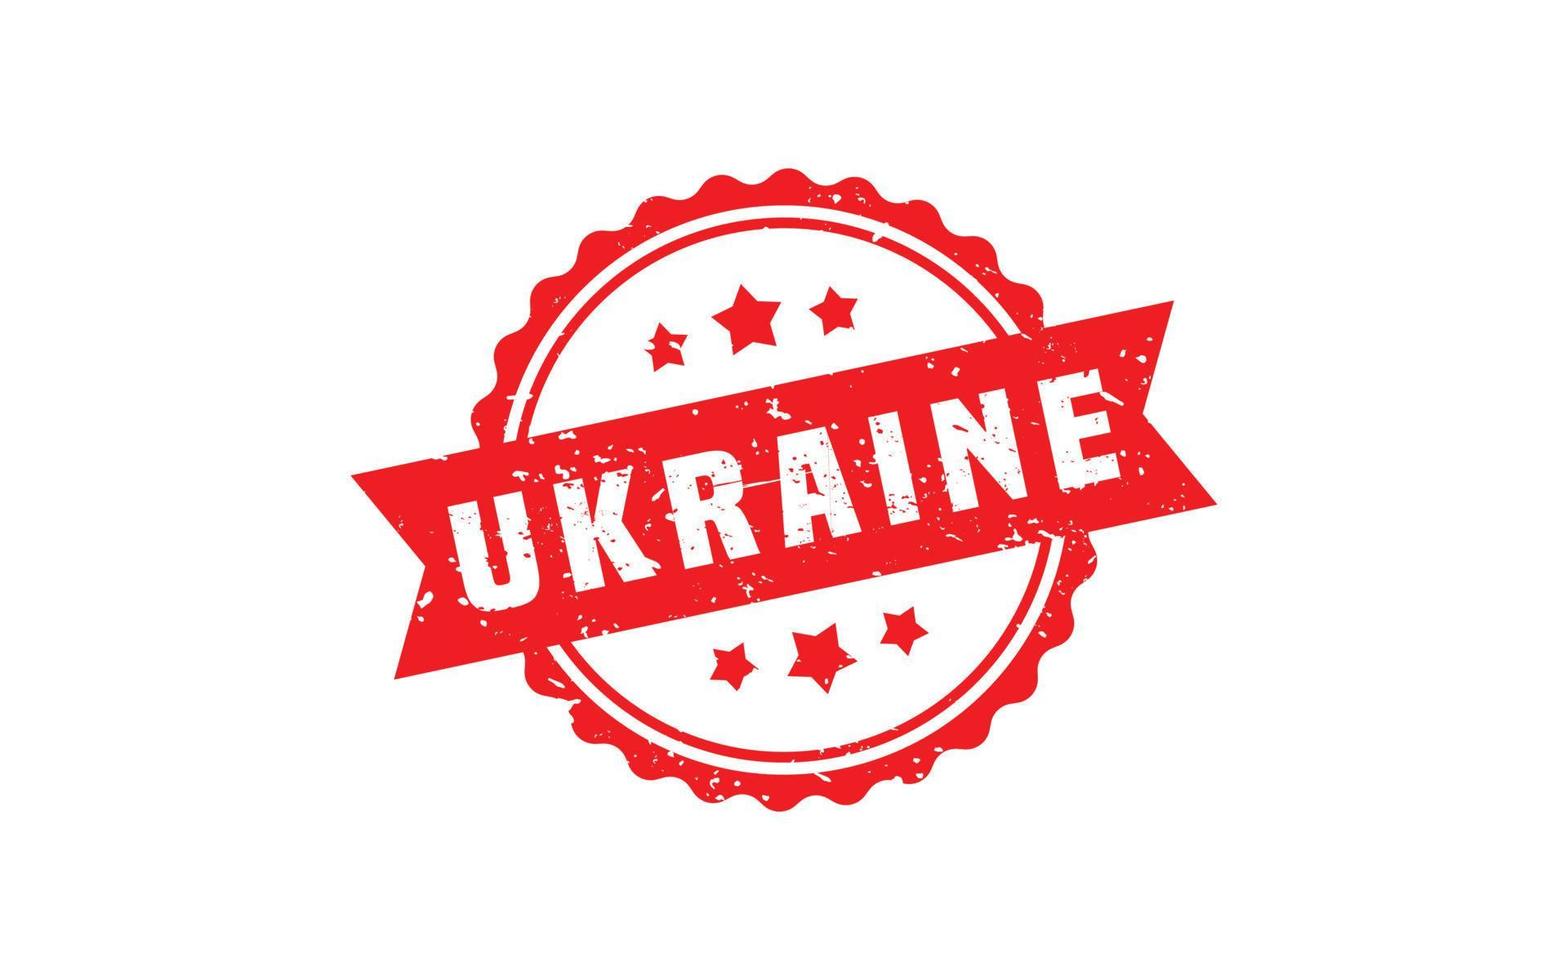 Timbre en caoutchouc ukrainien avec style grunge sur fond blanc vecteur